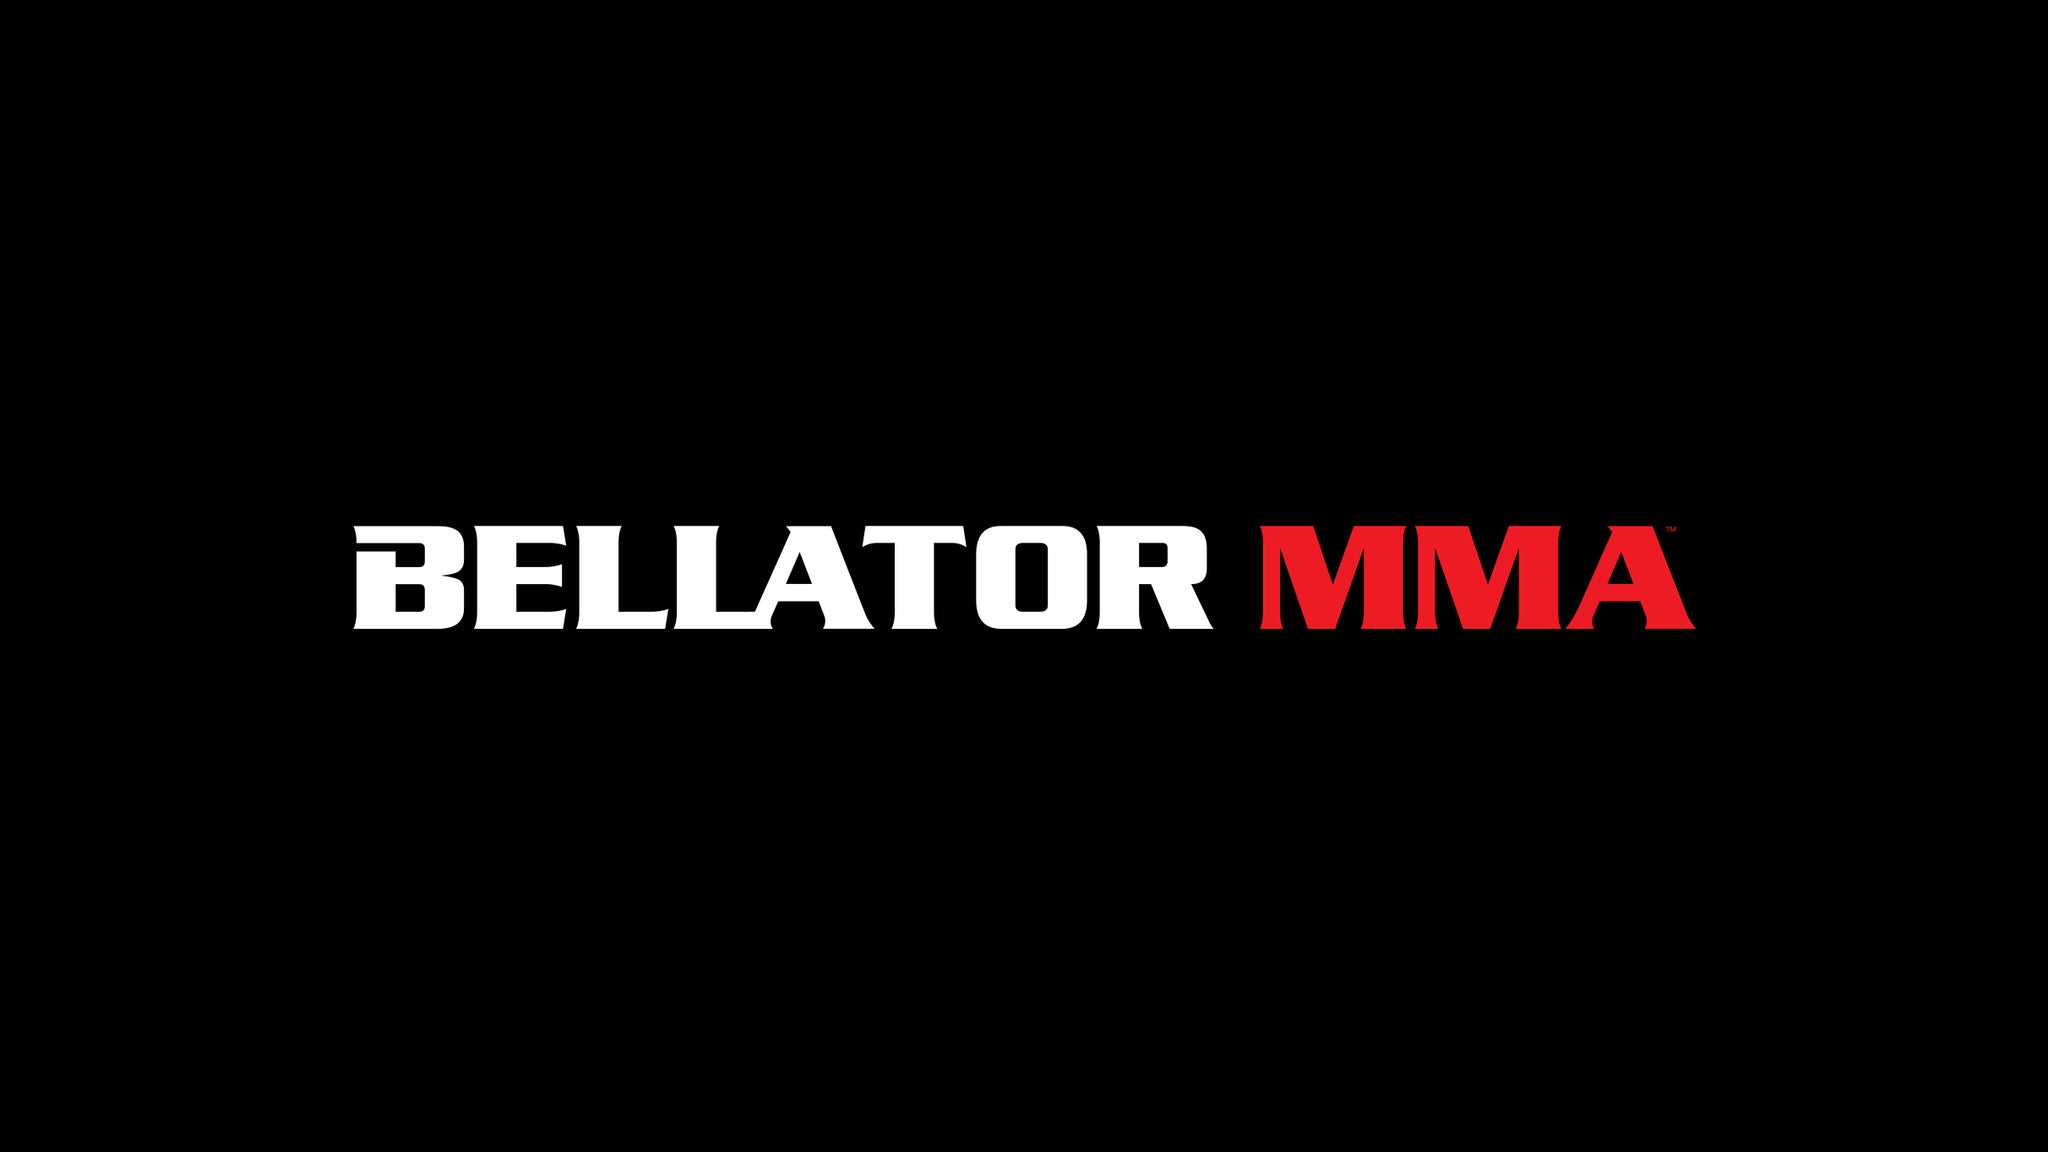 BELLATOR MMA at Mohegan Sun Arena